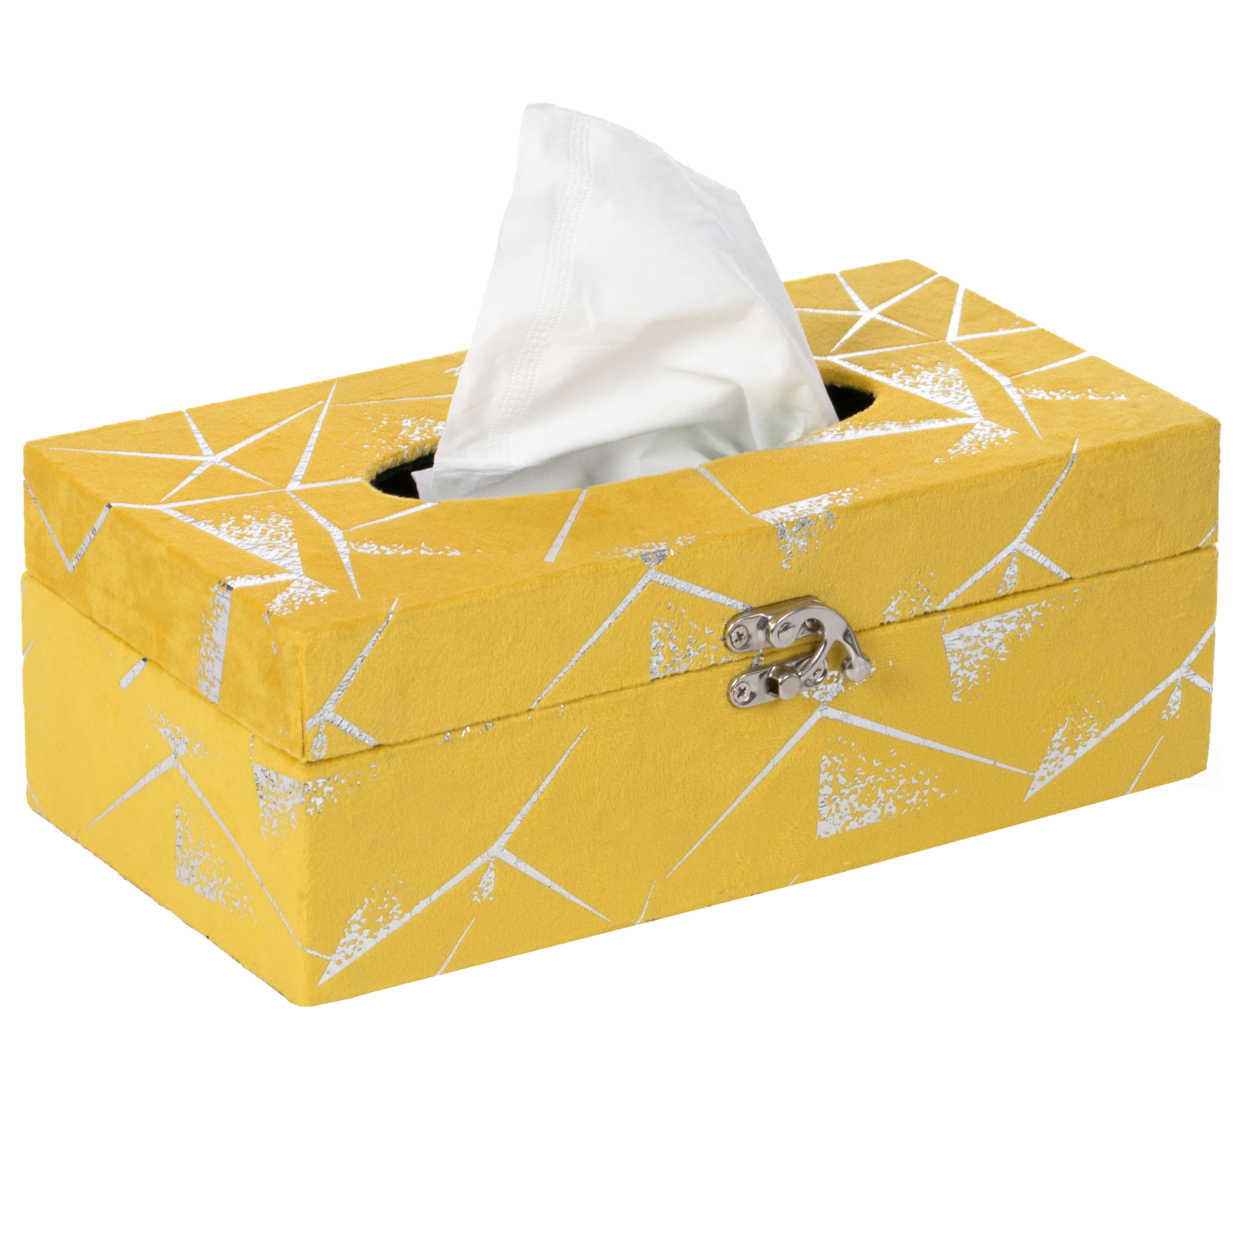 Velvet Modern Paper Facial Tissue Box Holder - White Square